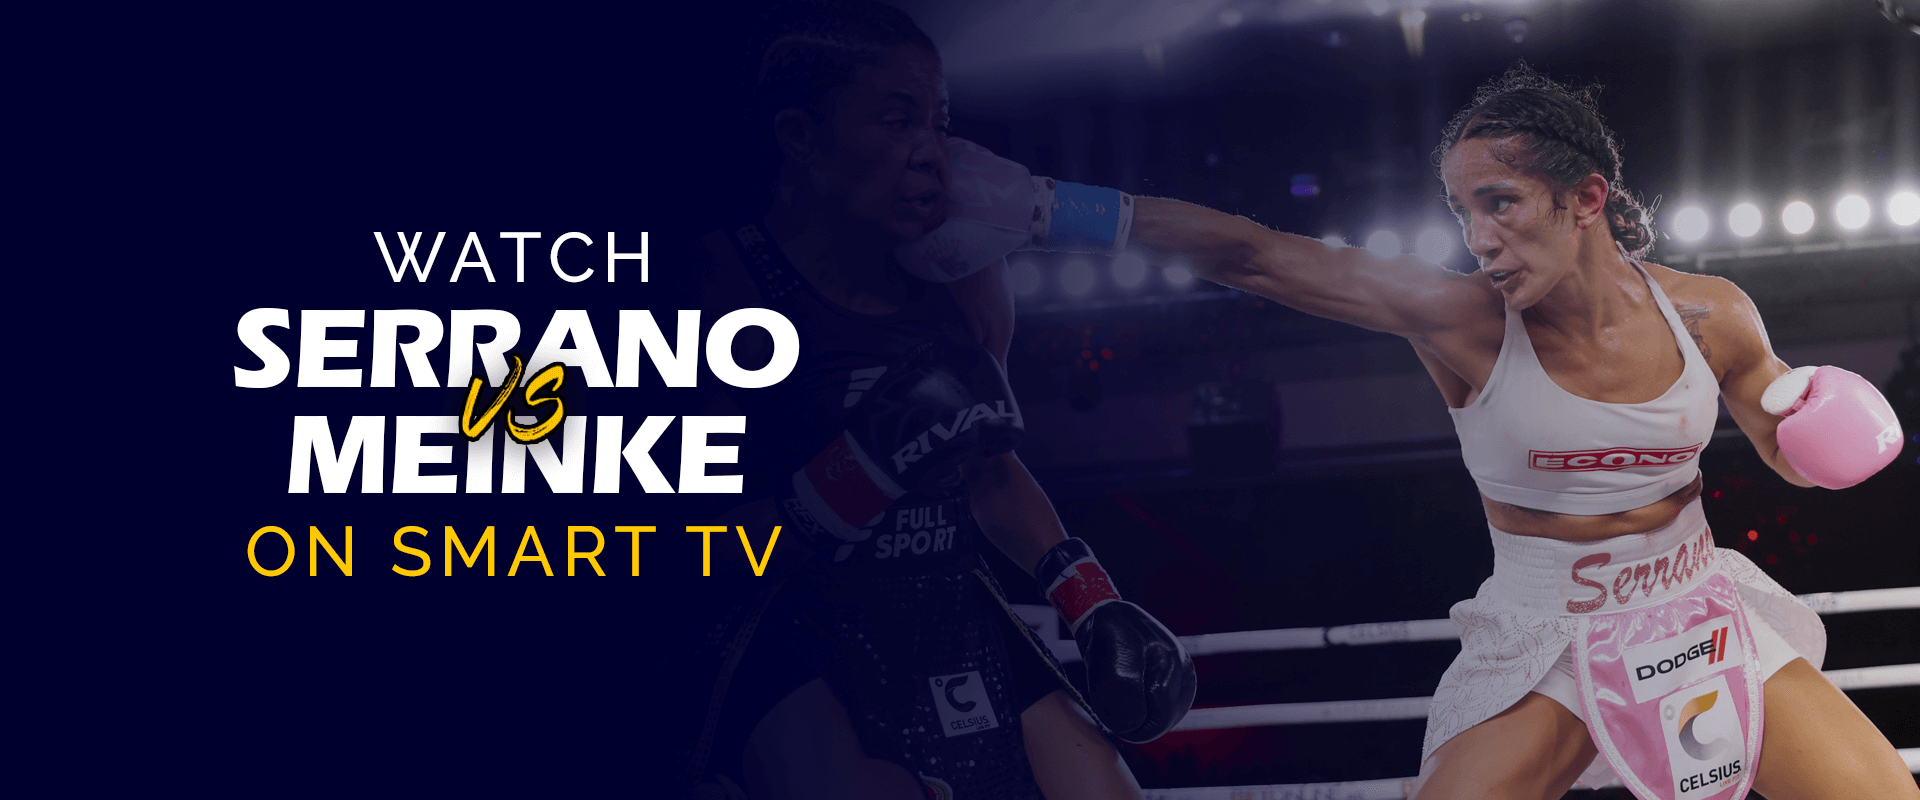 アマンダ・セラーノ vs ニーナ・メインケをスマート TV で観戦